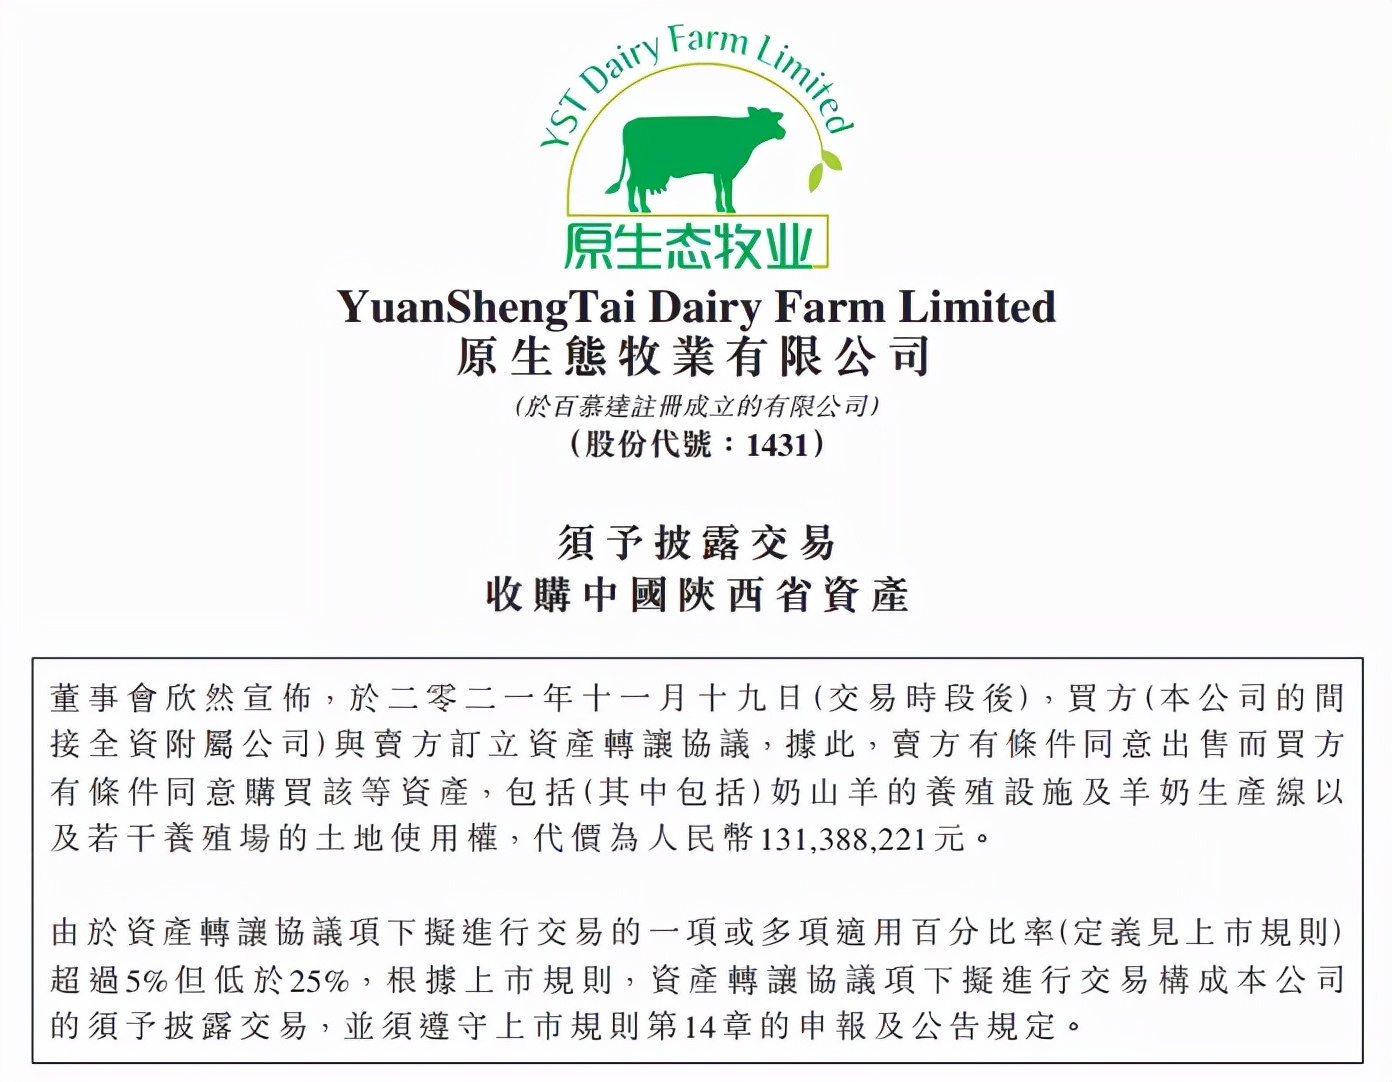 「乳业」飞鹤控股的原生态牧业将以1.31亿元收购陕西绿能牧业